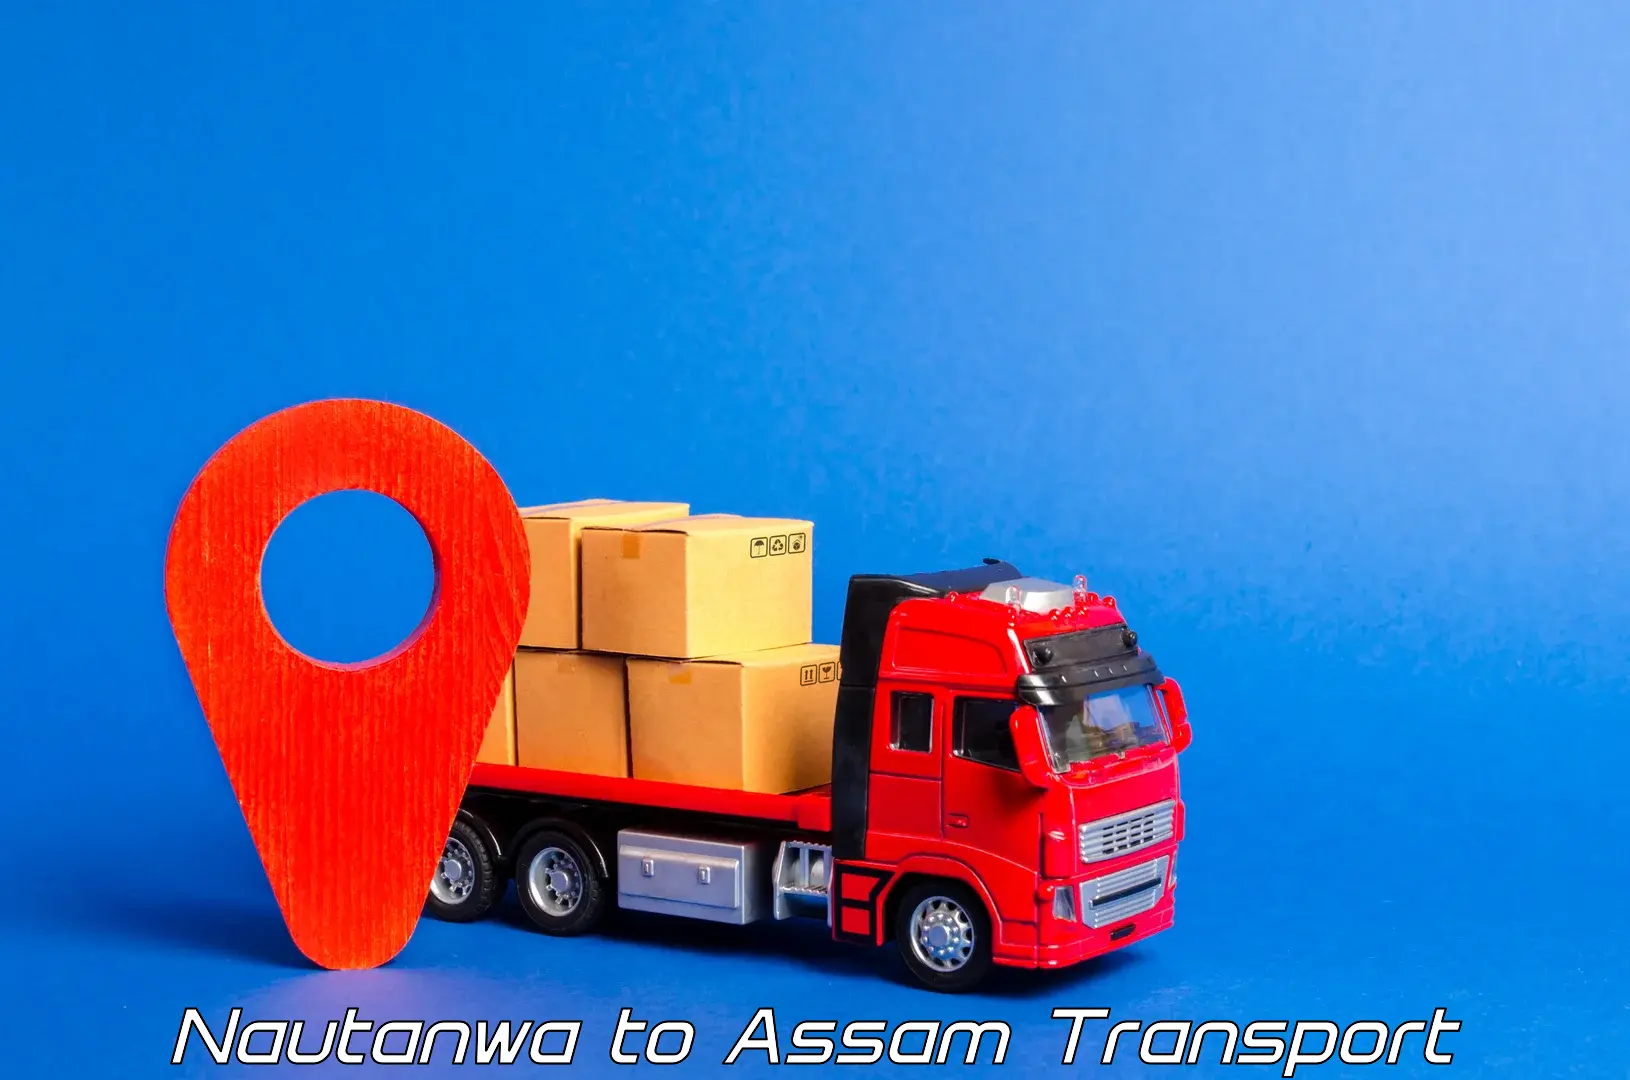 Container transport service Nautanwa to Gogamukh